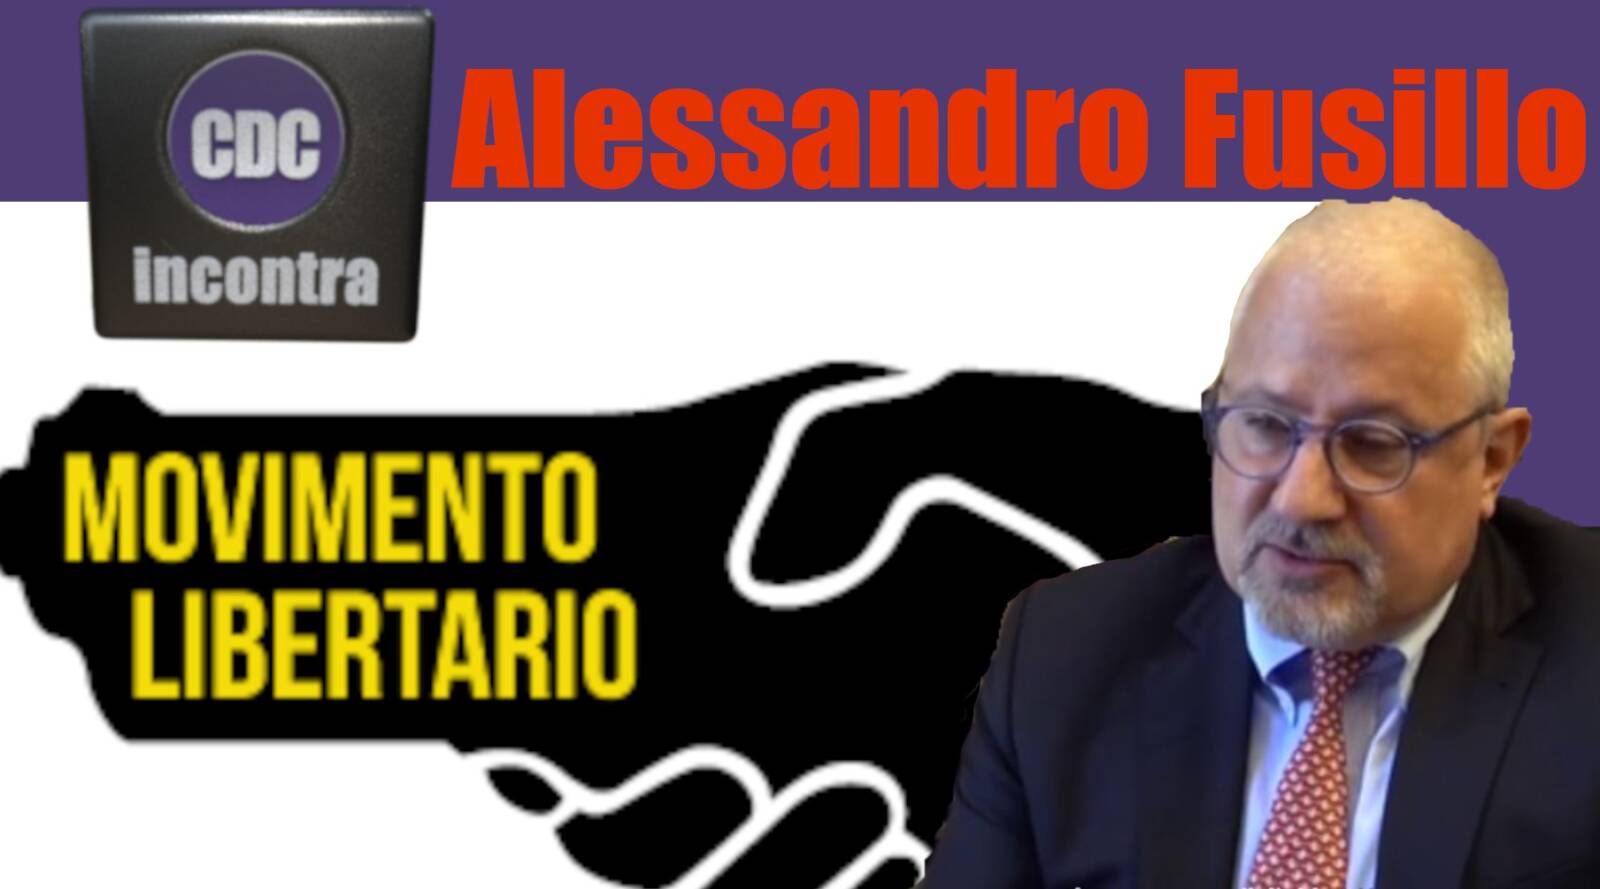 Avv. Alessandro Fusillo